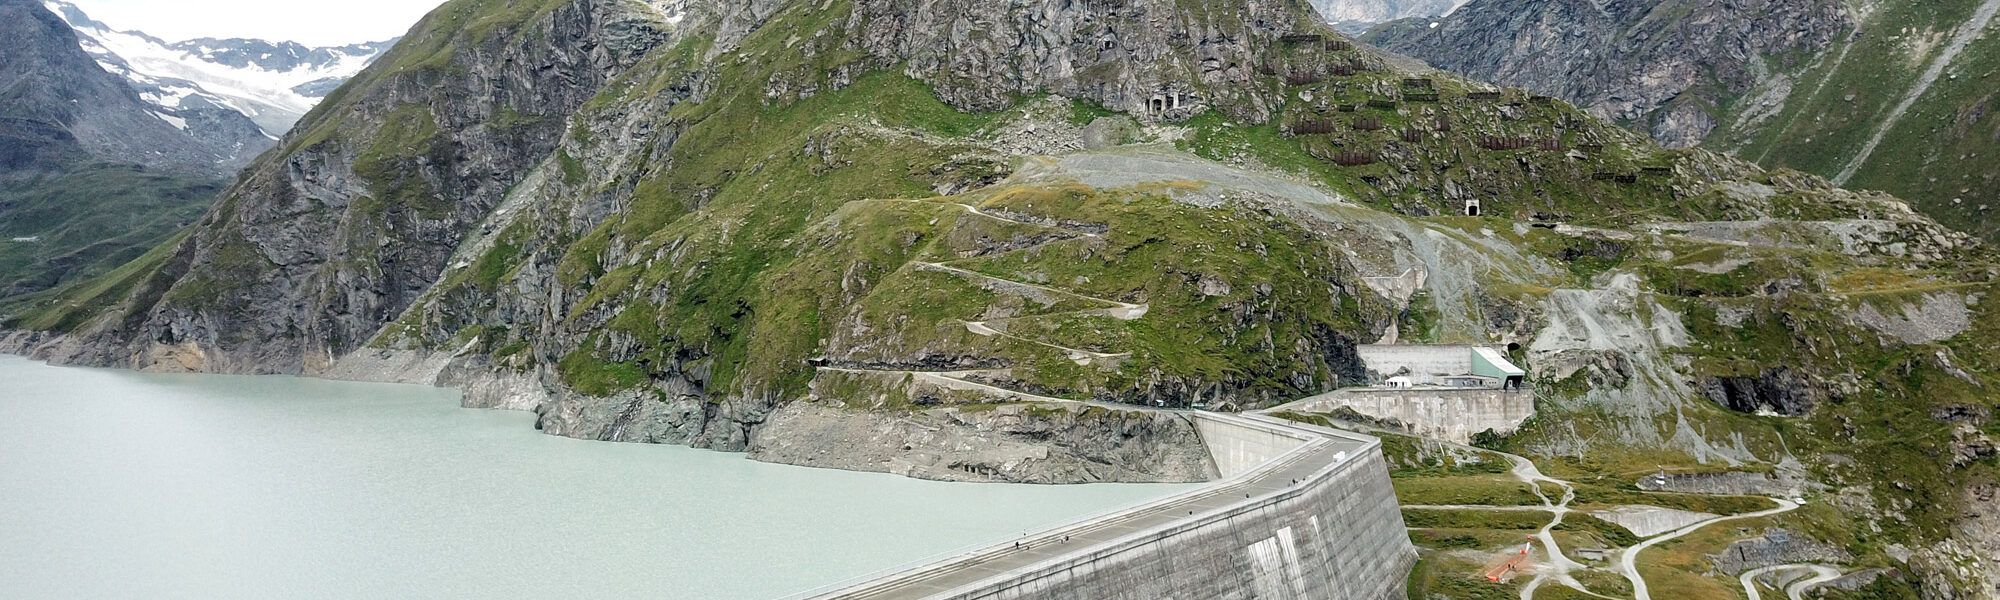 Zwitserland - Stuwdam van Dixence